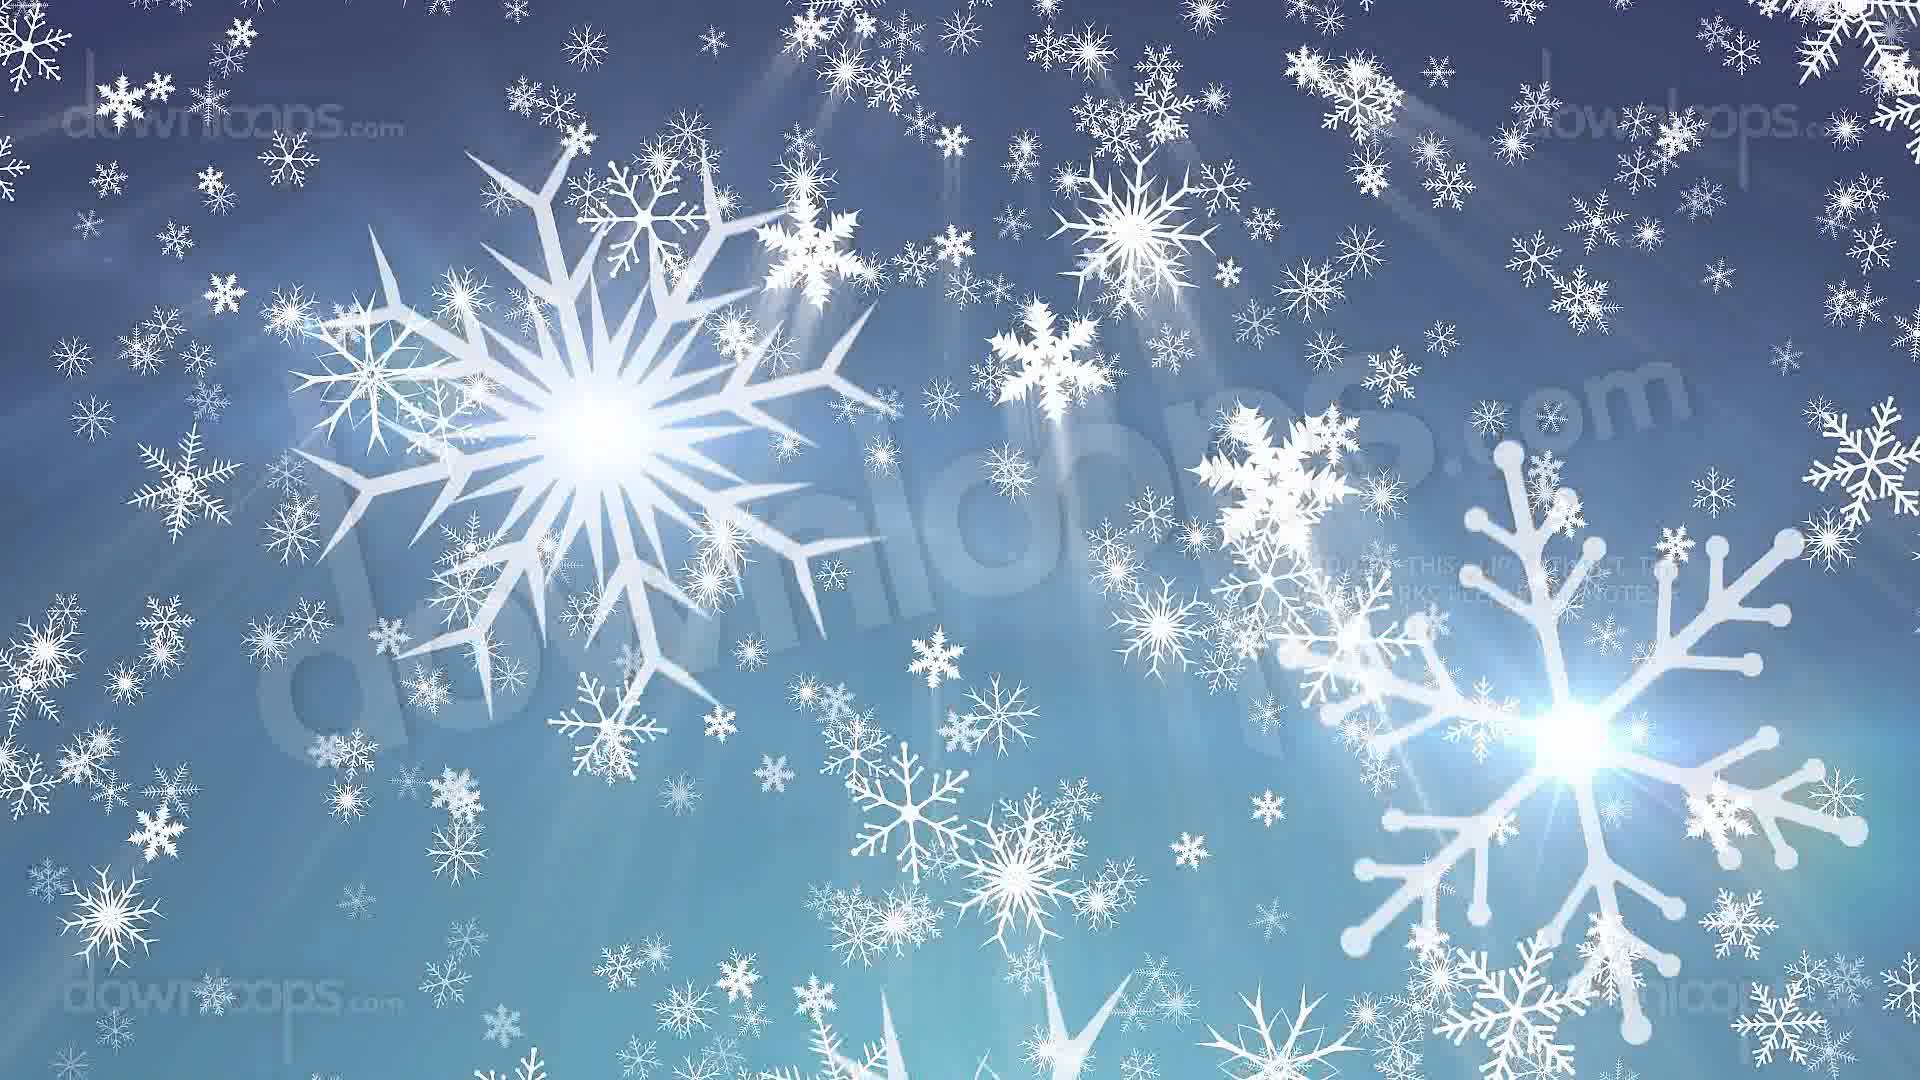 46+] Animated Snowflake Wallpaper - WallpaperSafari